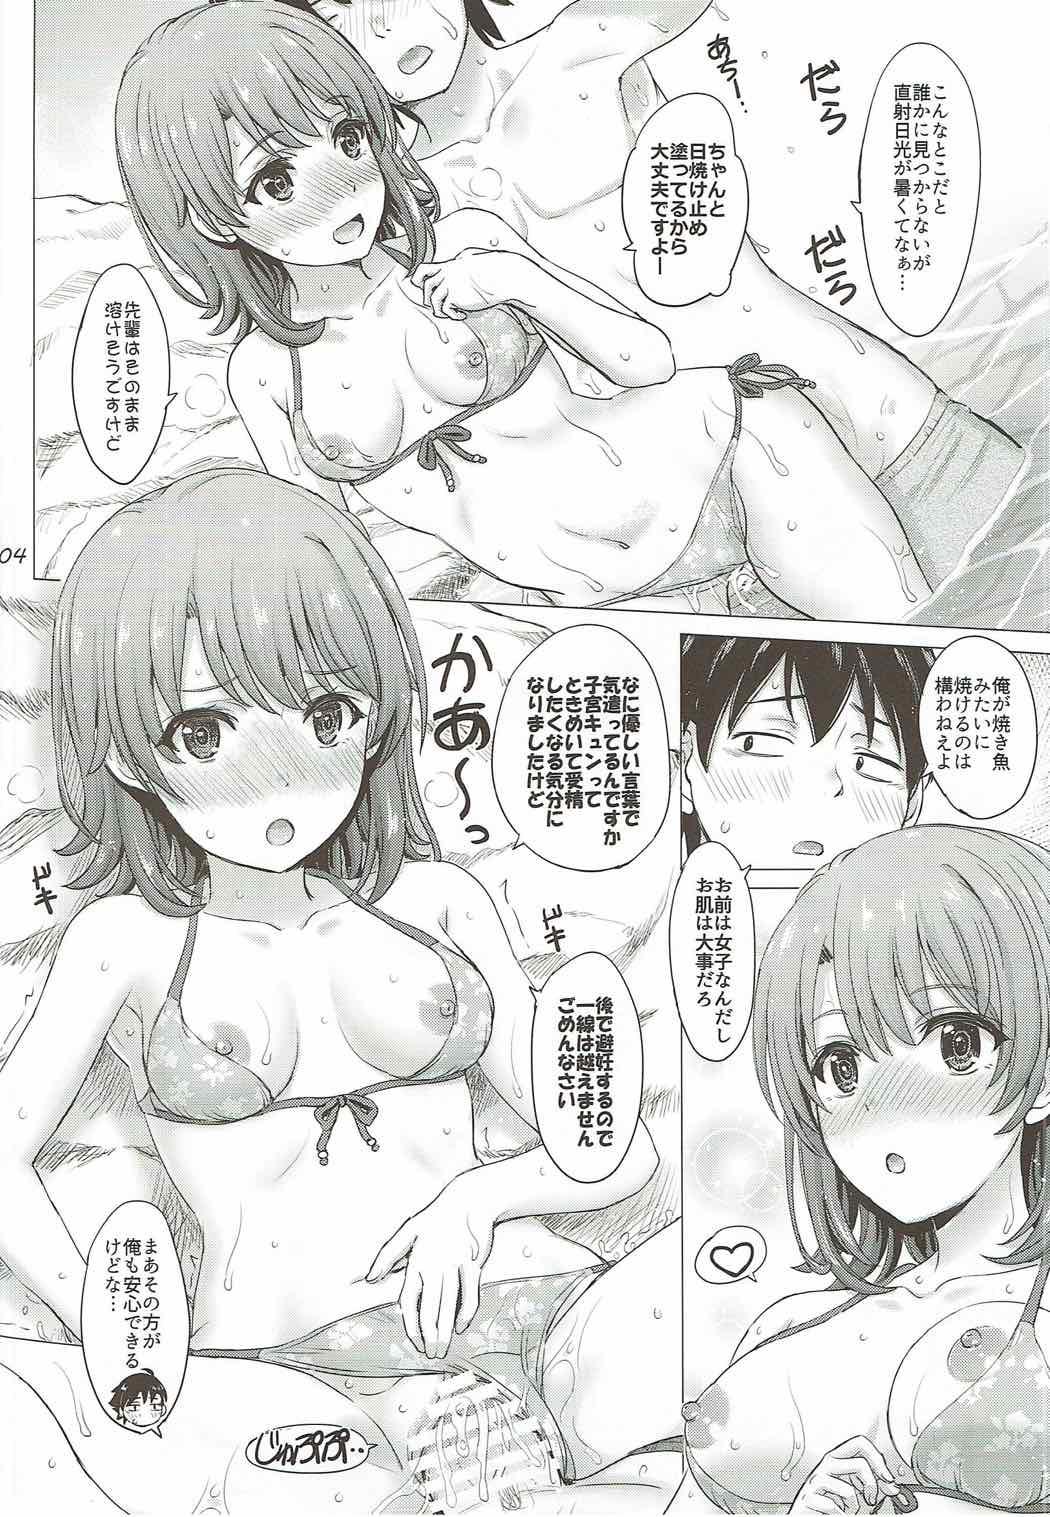 Homosexual Isshiki Iroha no Iyarashii Natsuyasumi. - Yahari ore no seishun love come wa machigatteiru Panties - Page 3